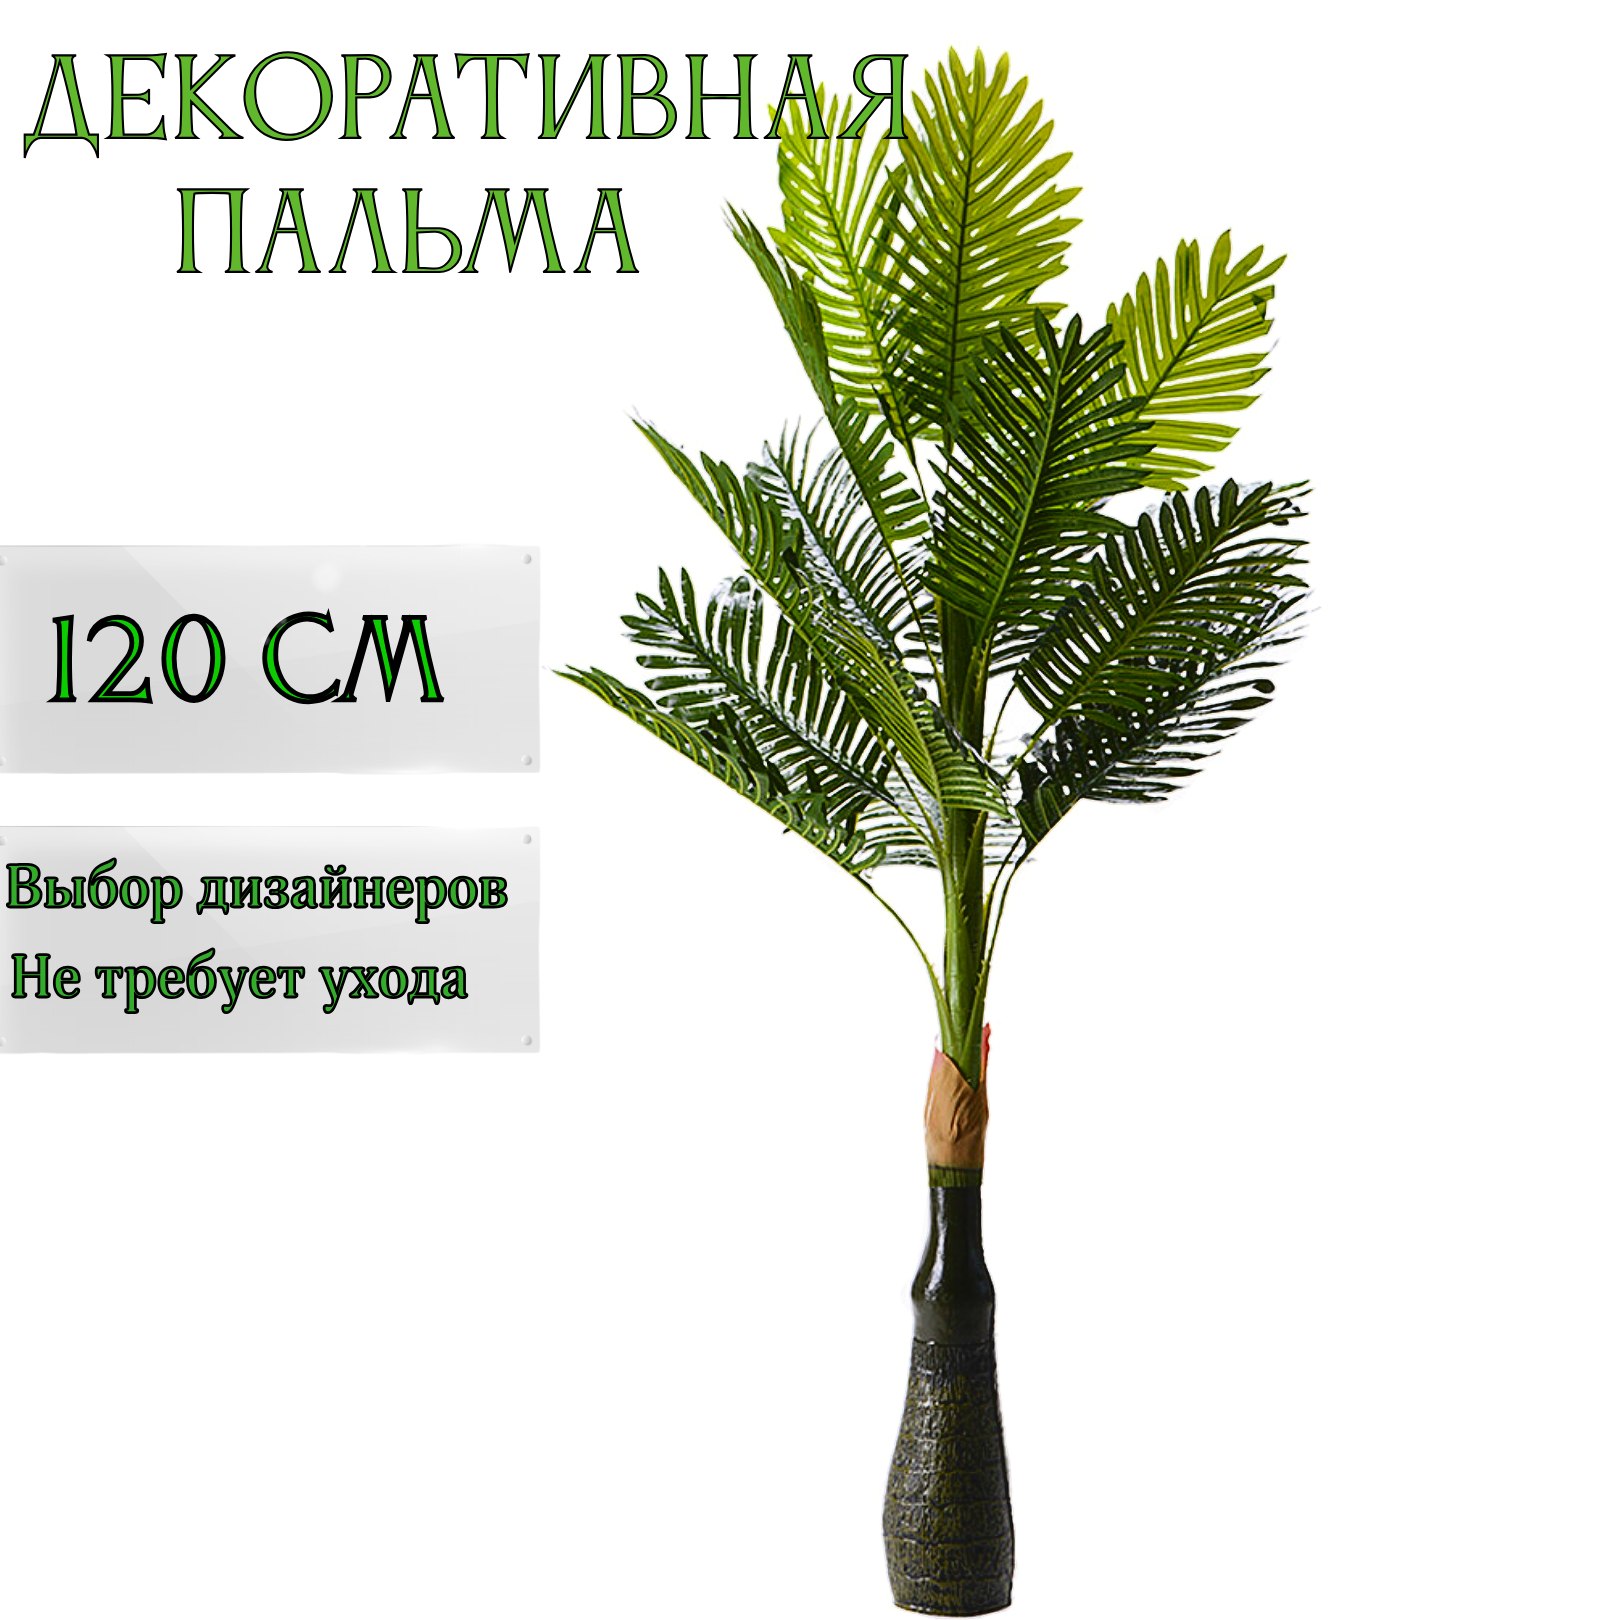 Дерево искусственное для декора интерьера пальма, высокое декоративное растение 120 см.